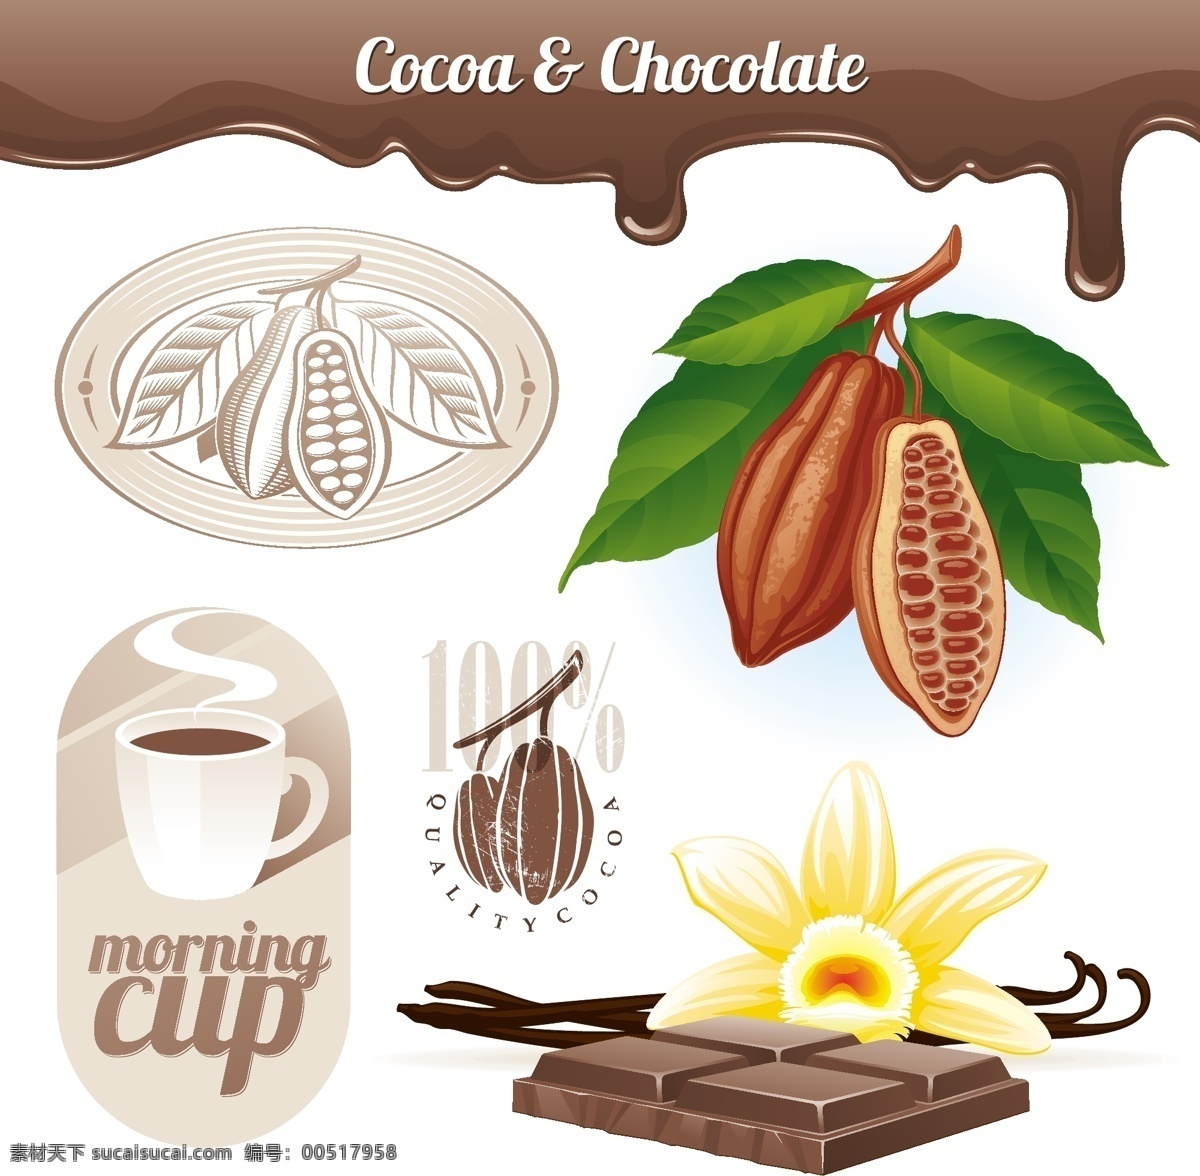 咖啡 橄榄 矢量 橄榄枝 咖啡豆 巧克力 矢量素材 海报 其他海报设计